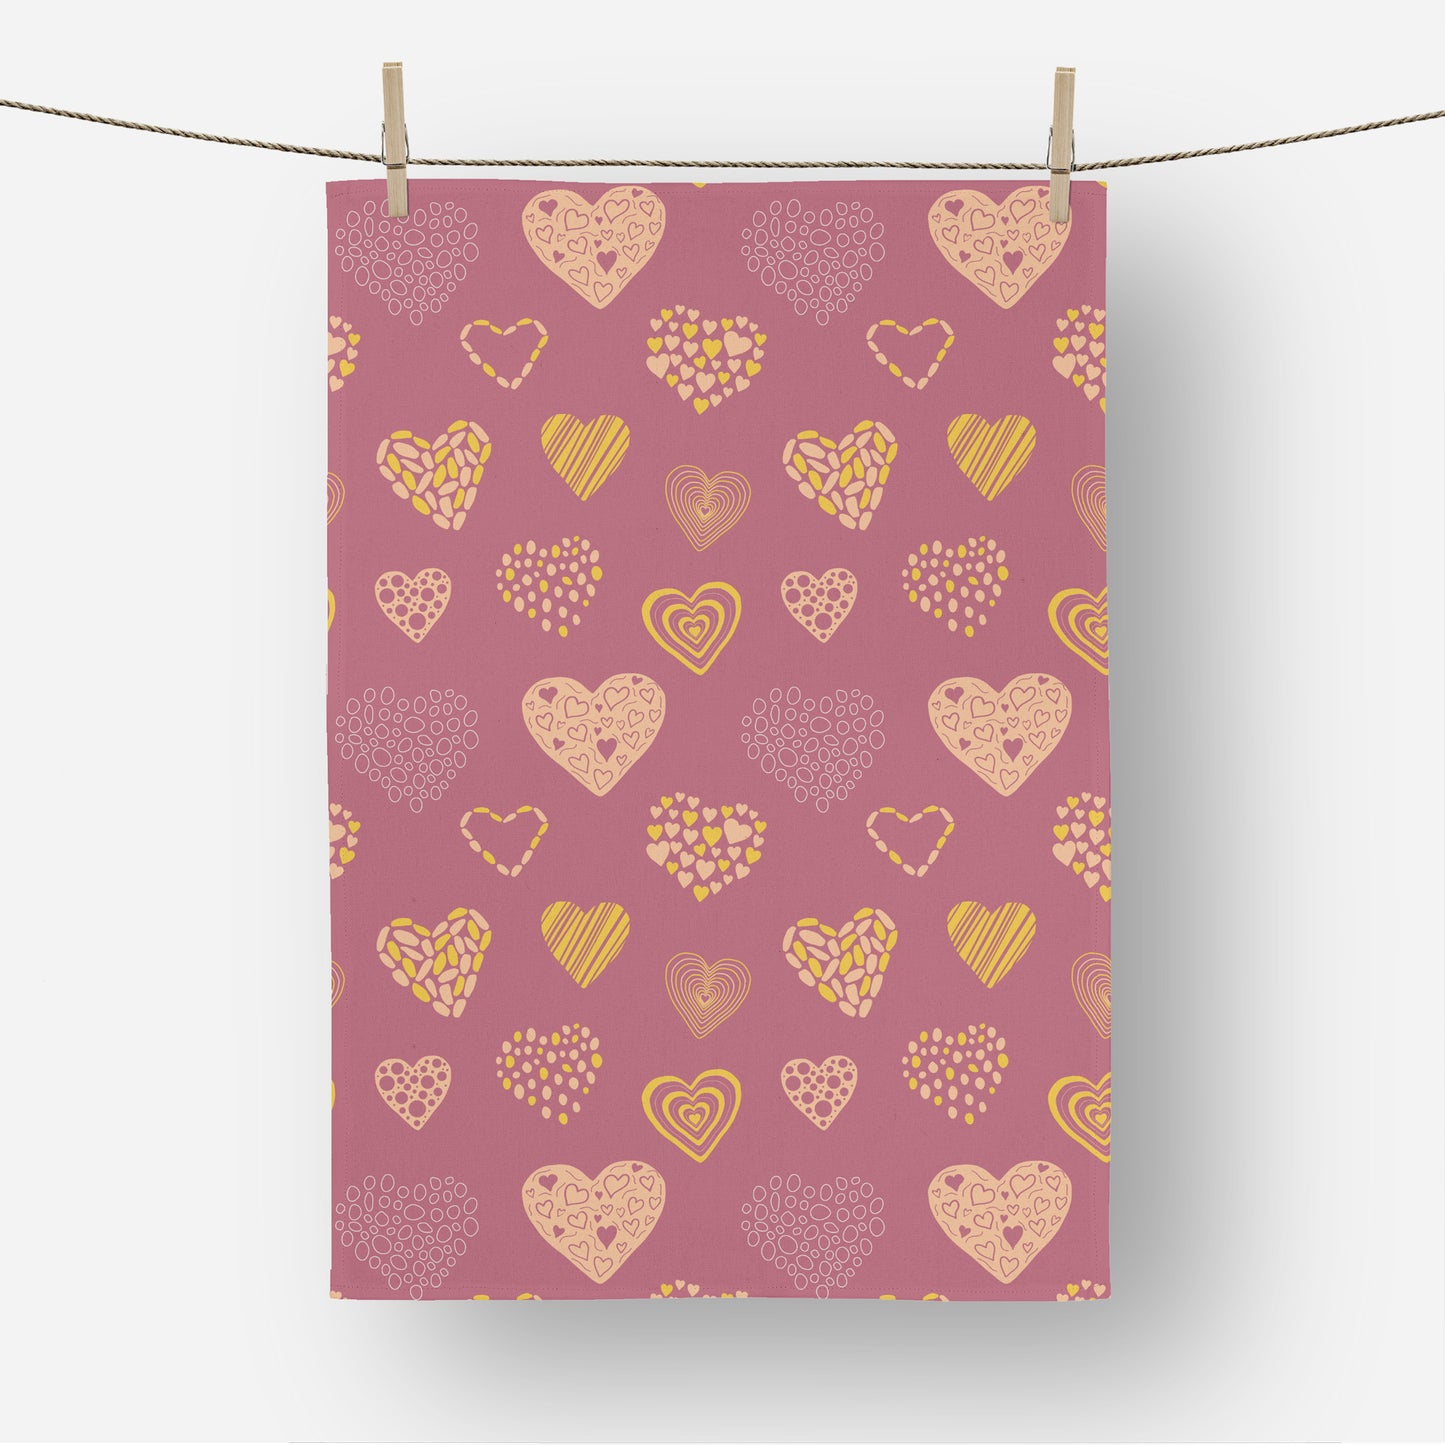 Love is in the air - Tea Towel